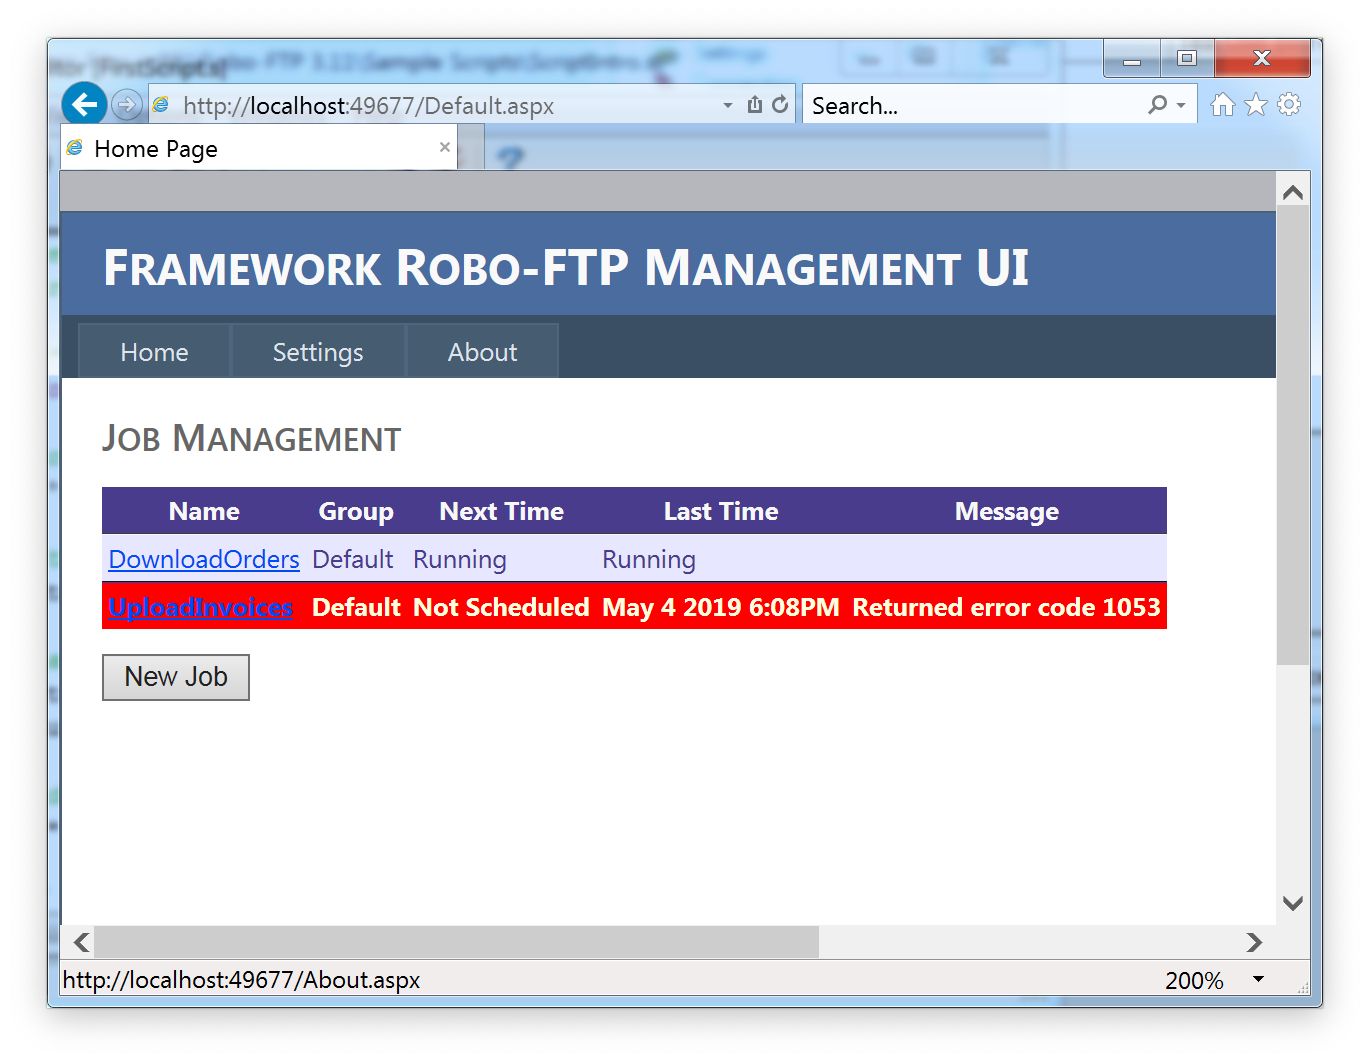 Robo-FTP Enterprise Framework